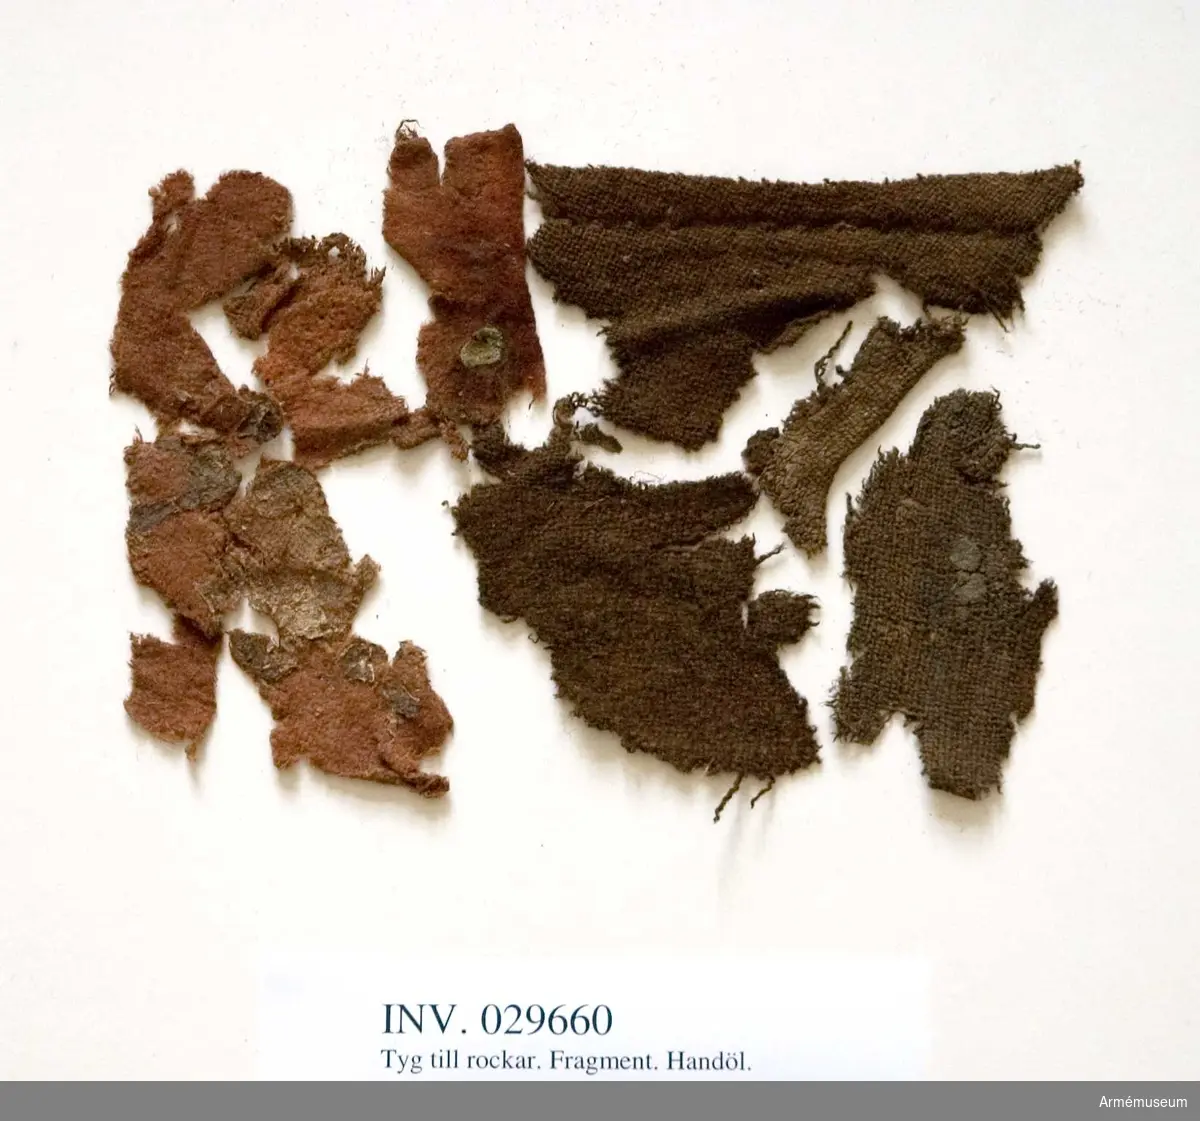 Grupp C I
Karolinerfynd från Handöl. Rödbruna och mörkbruna fragment med rester av jord.

Samhörande fynd: AM.11462-3, 29660-75